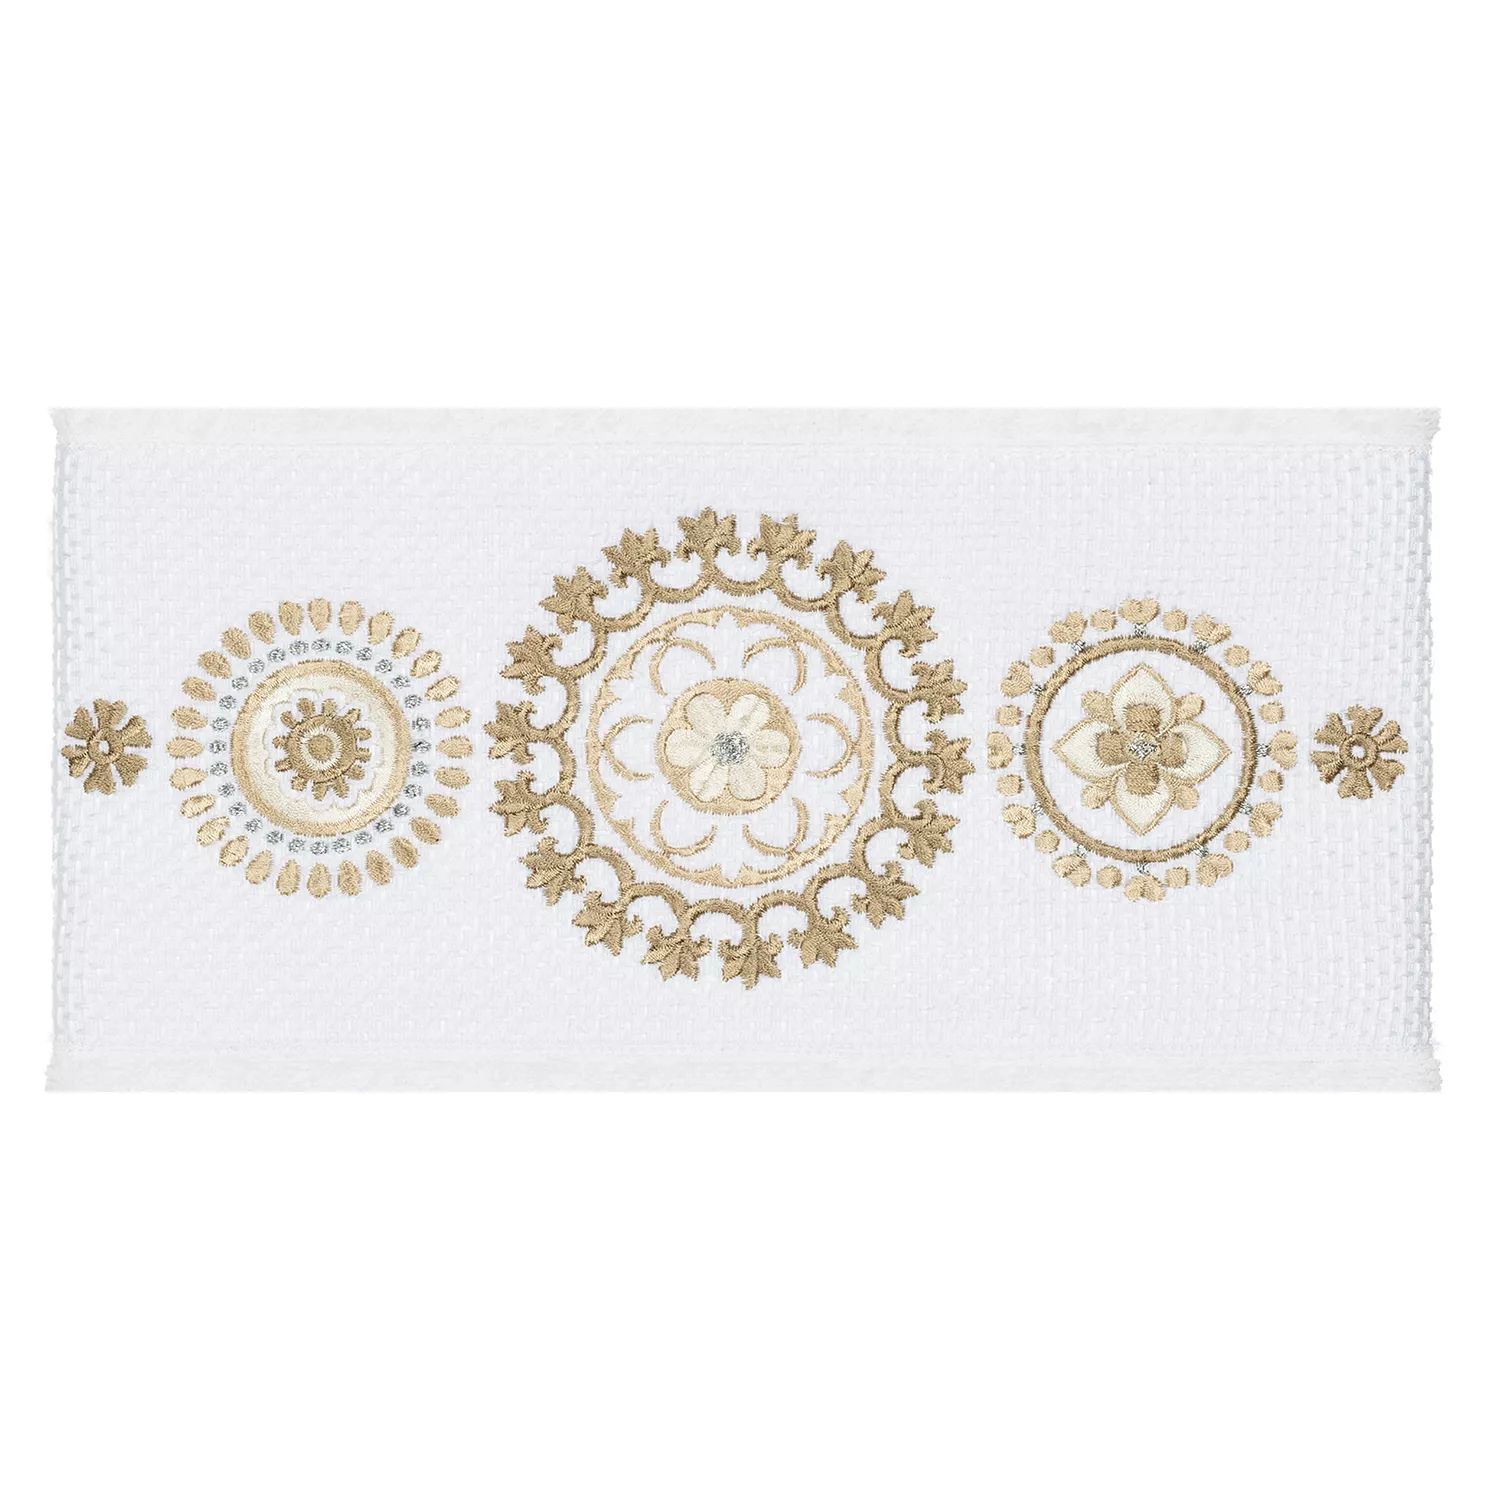 Linum Home Textiles Набор полотенец из 3 предметов из турецкого хлопка с украшением Isabelle, темно-серый